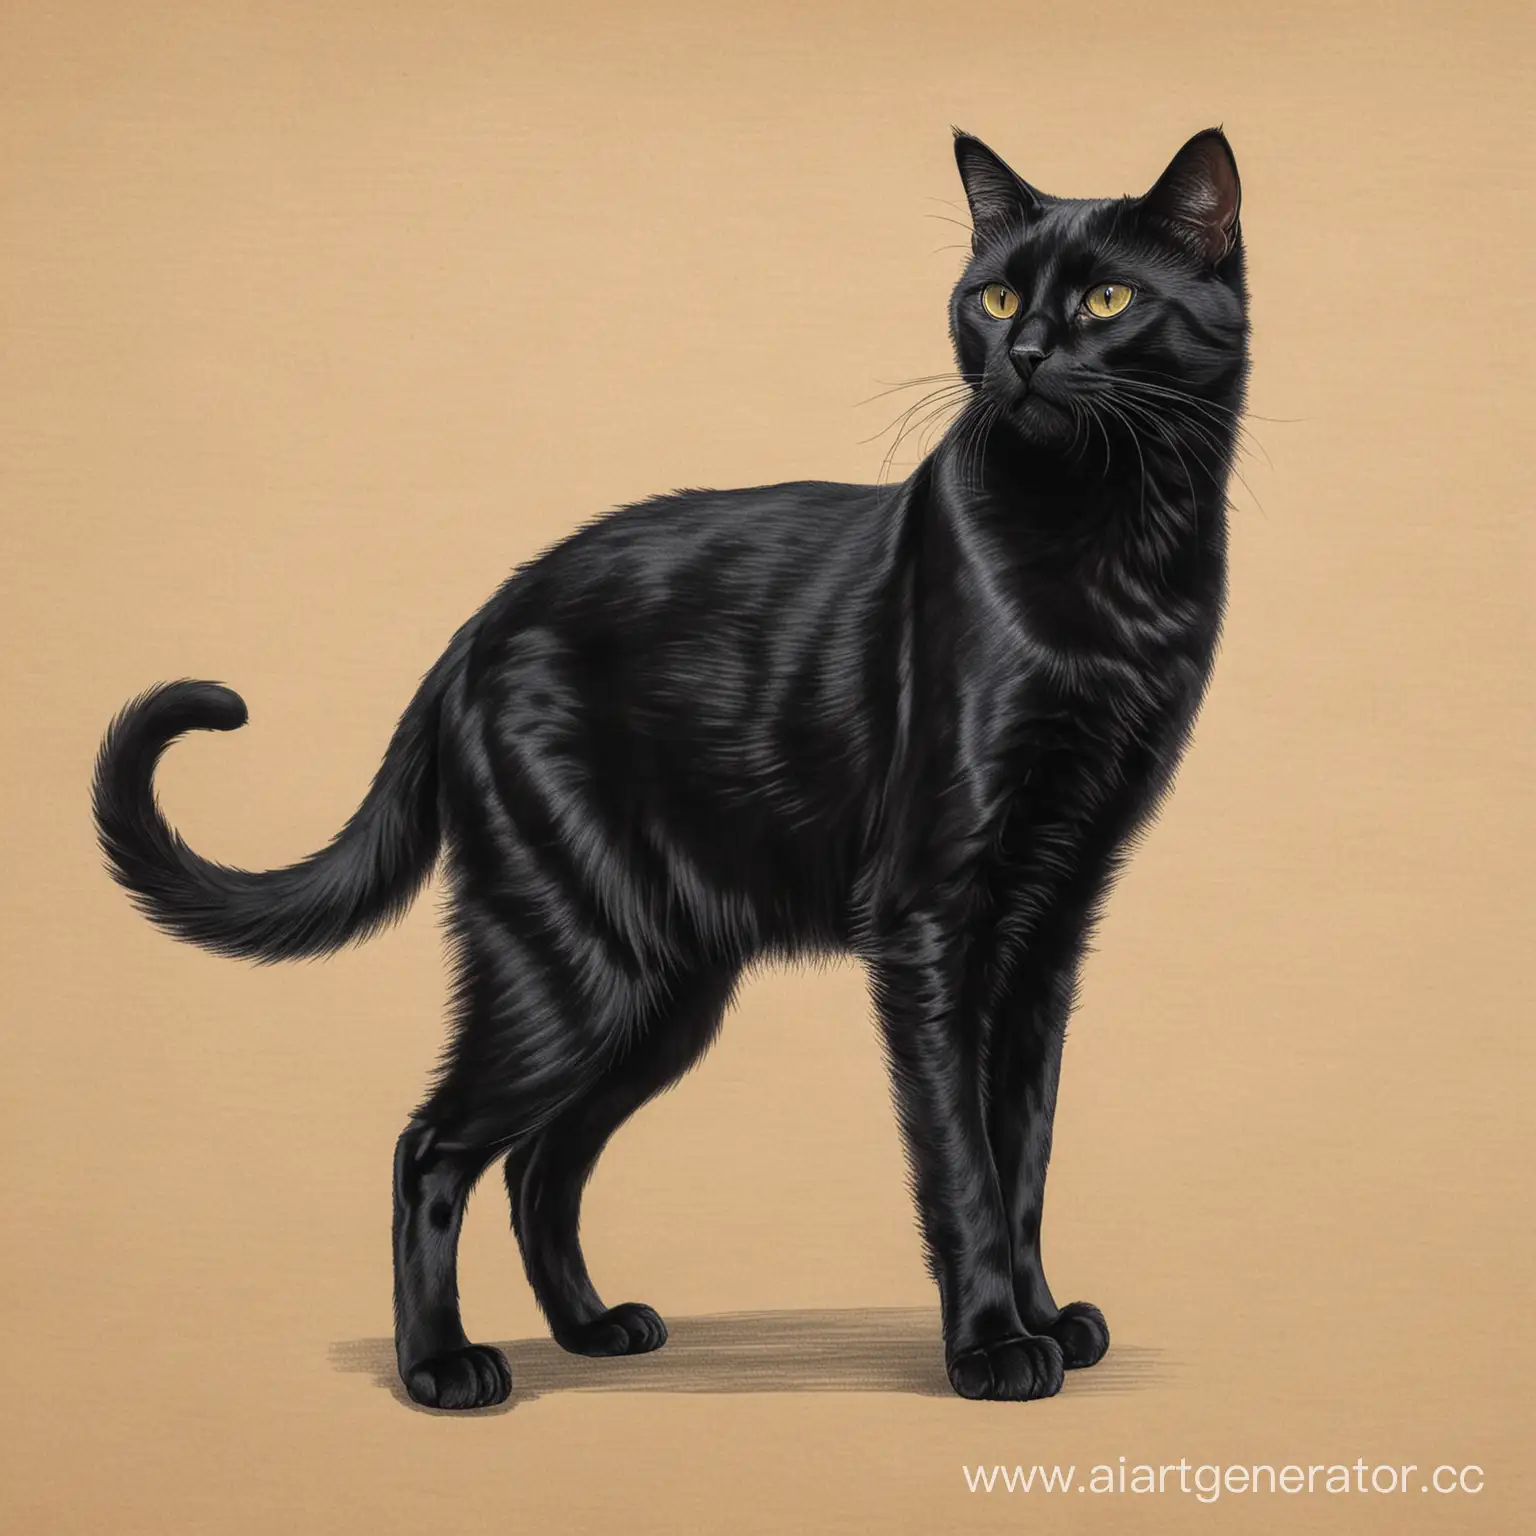 Нарисуй чёрного кота в полный рост,желательно арт